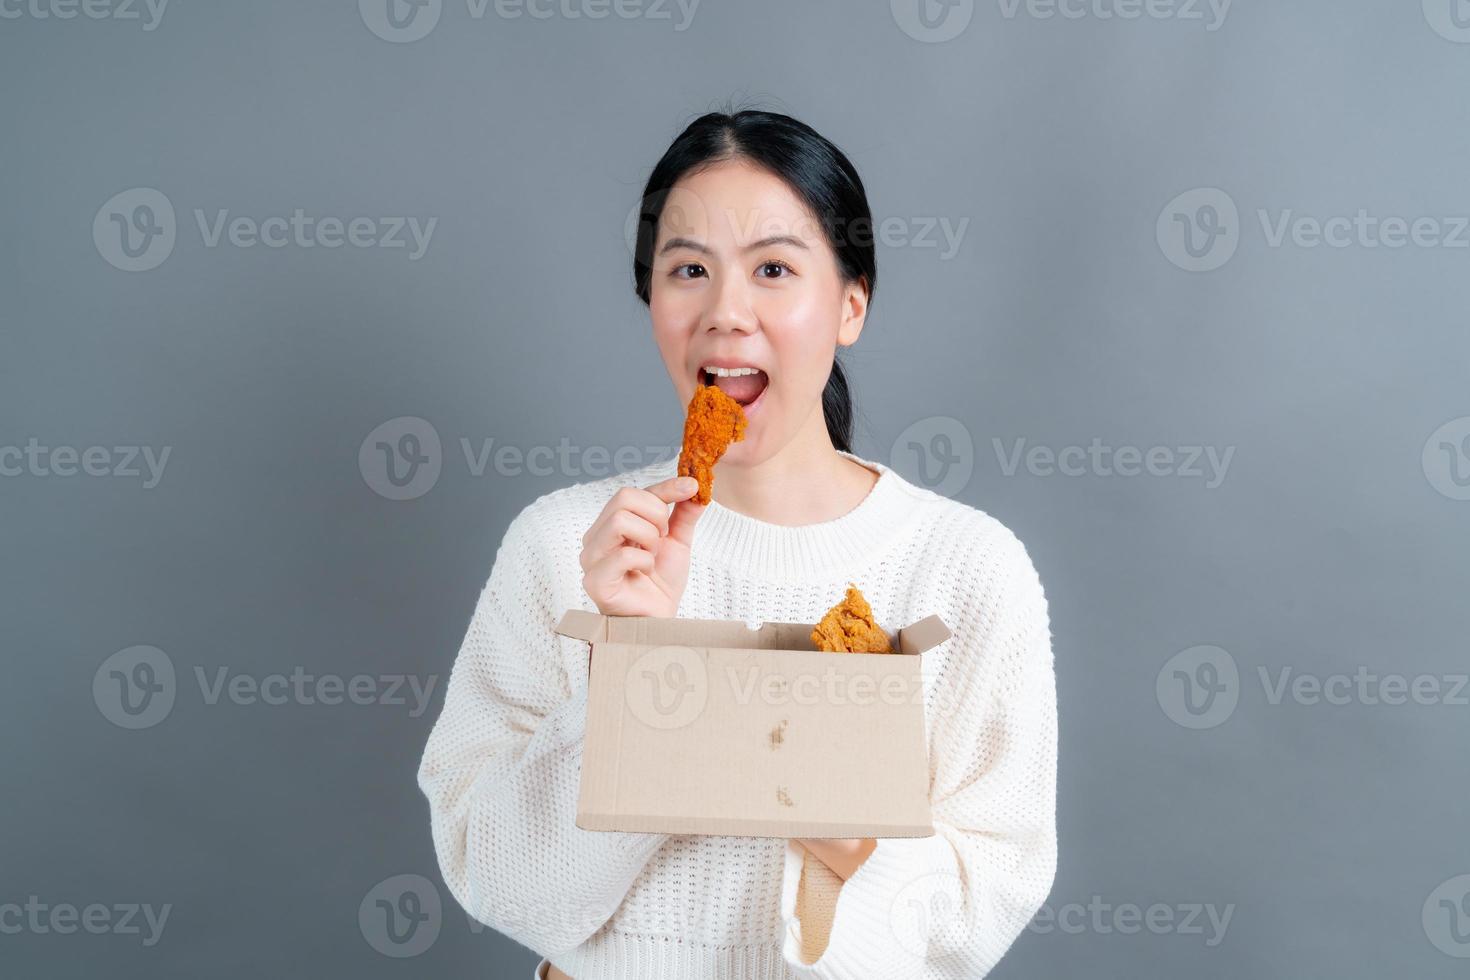 jeune femme asiatique portant un pull avec un visage heureux et aime manger du poulet frit sur fond gris photo